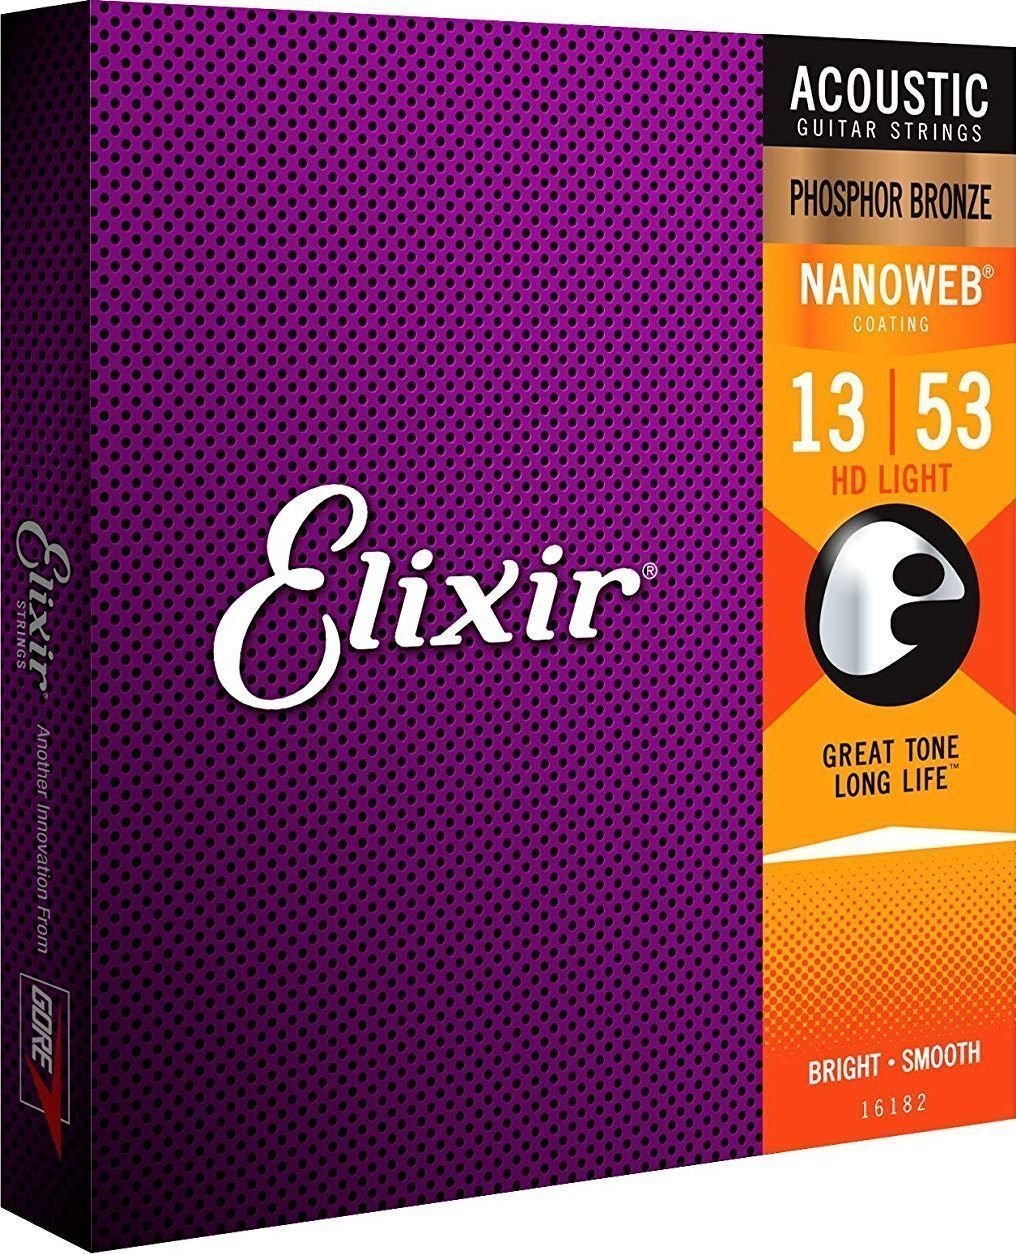 Snaren voor akoestische gitaar Elixir 16182 Nanoweb 13-53